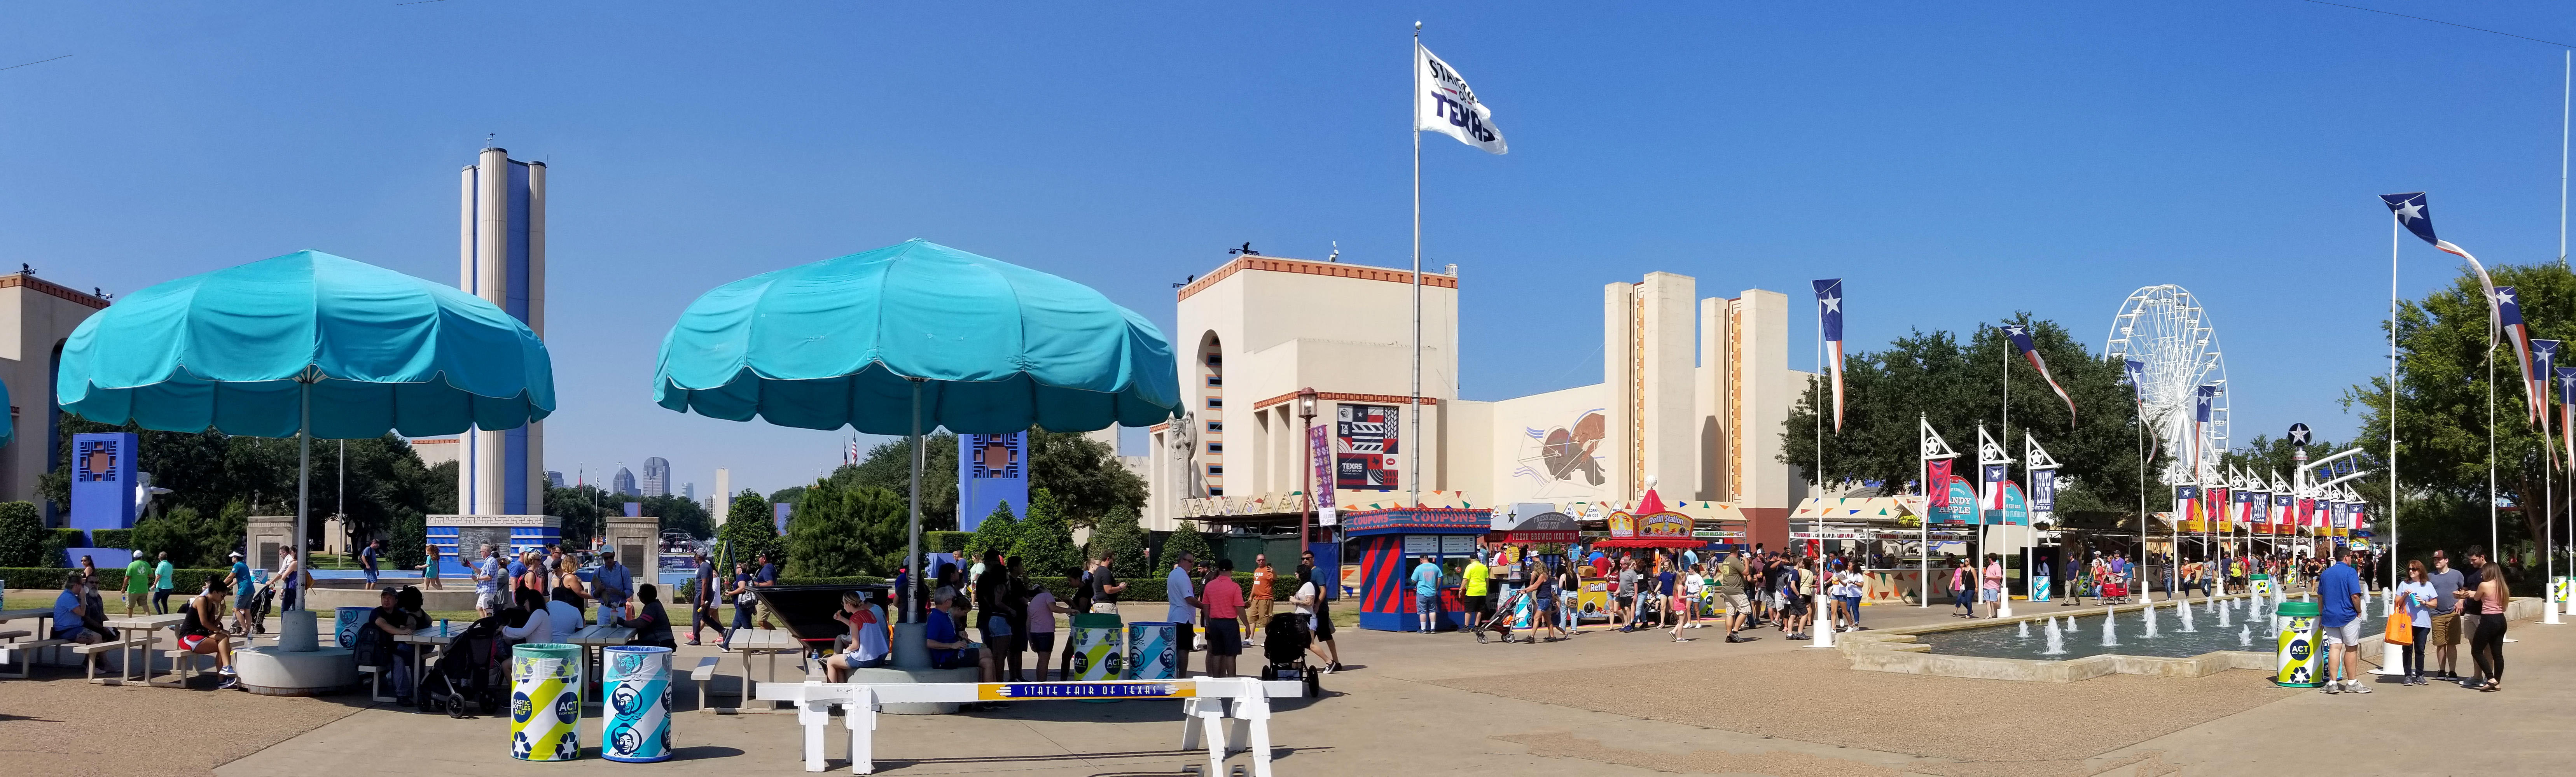 State Fair of Texas Fairgrounds